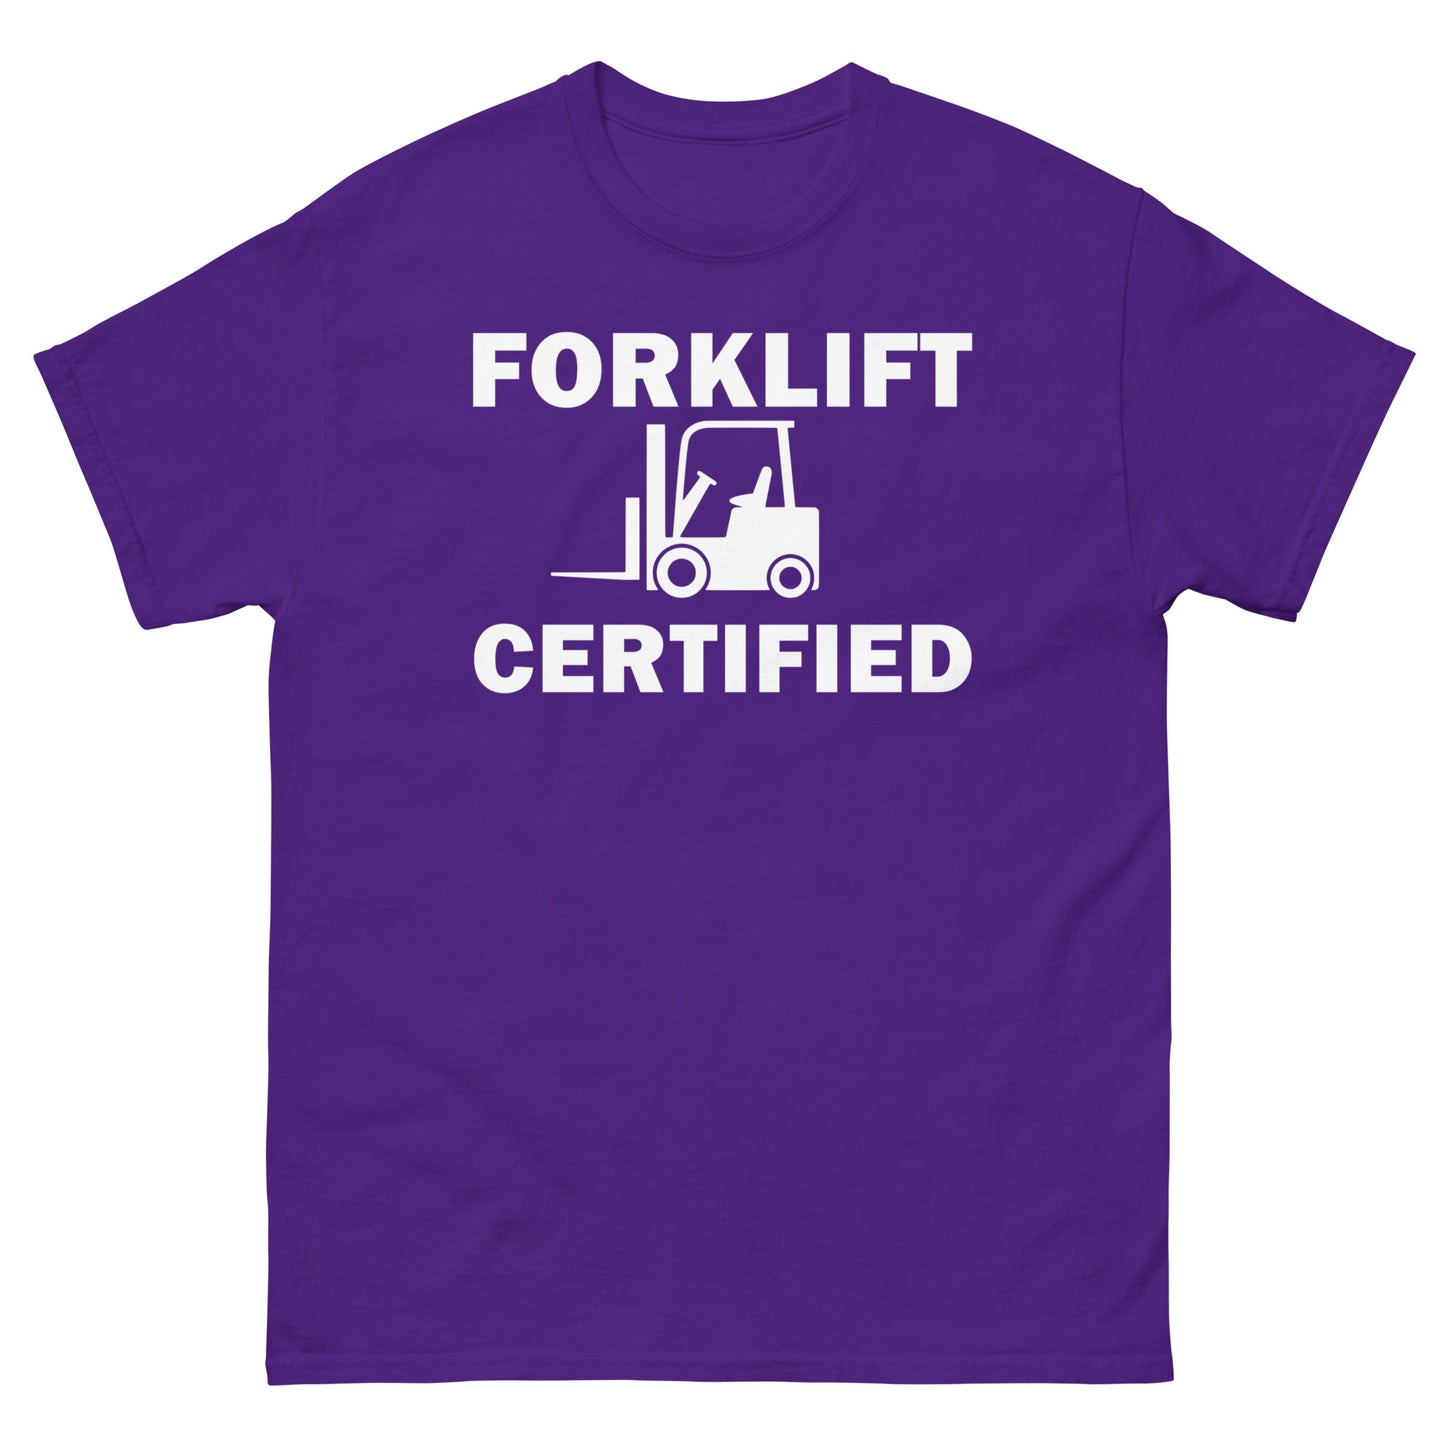 FORKLIFT CERTIFIED - Men's classic tee